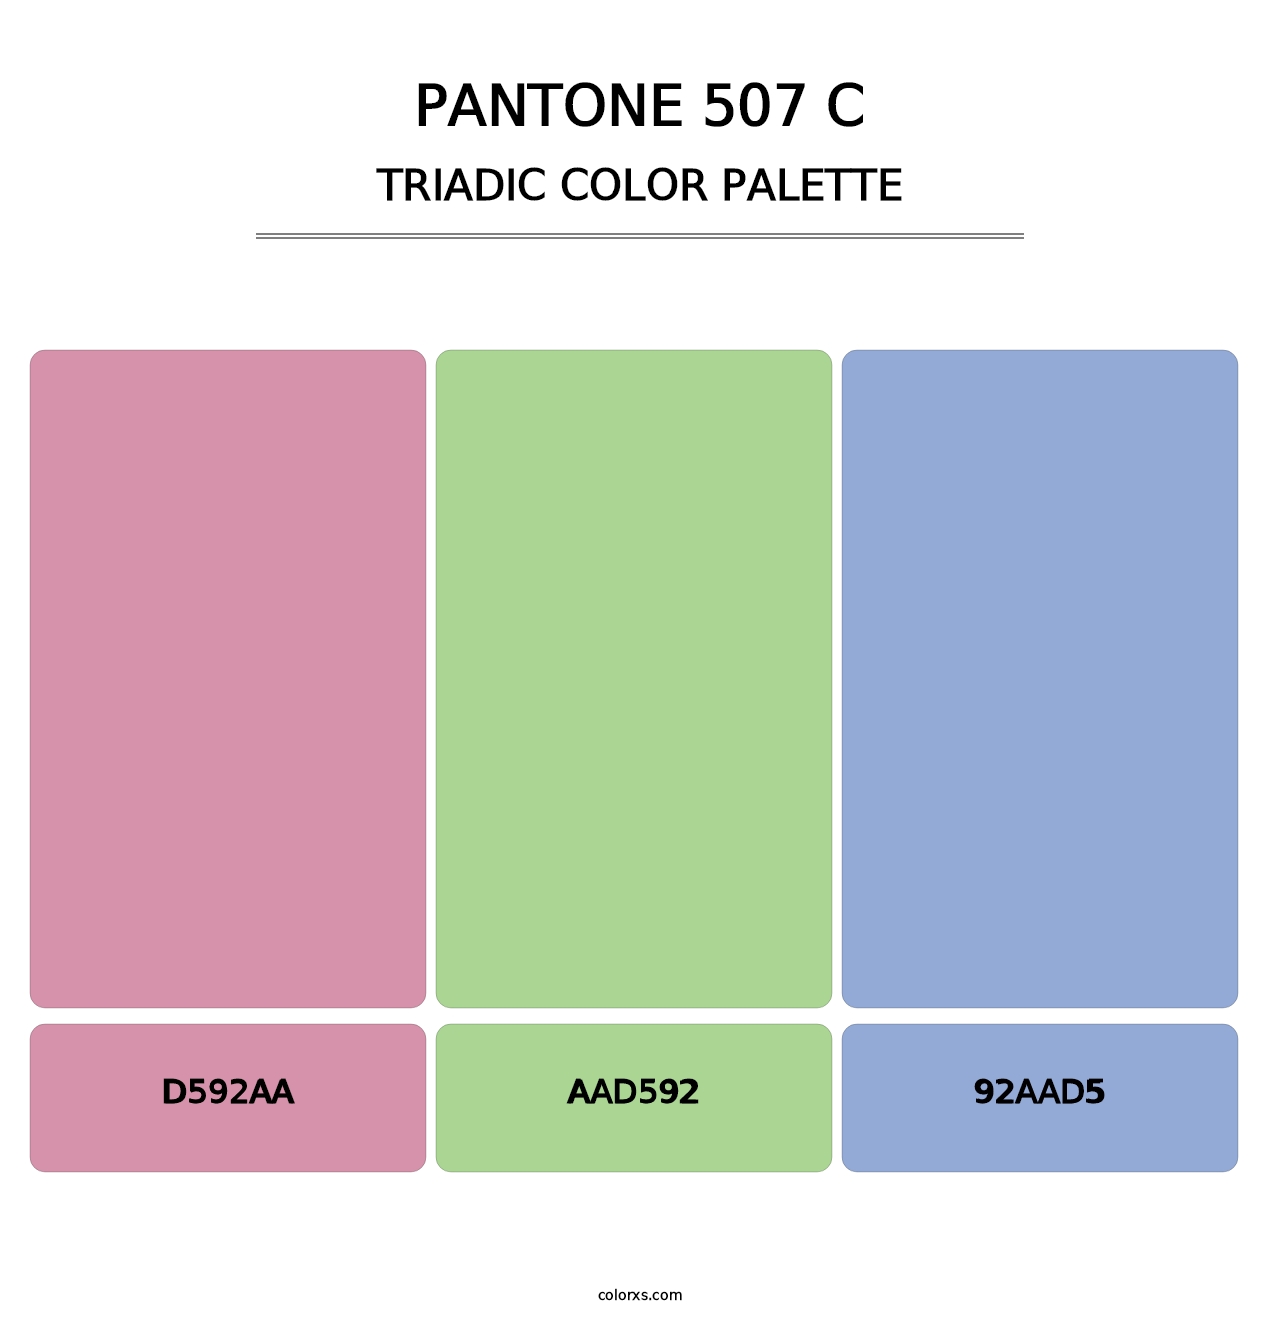 PANTONE 507 C - Triadic Color Palette